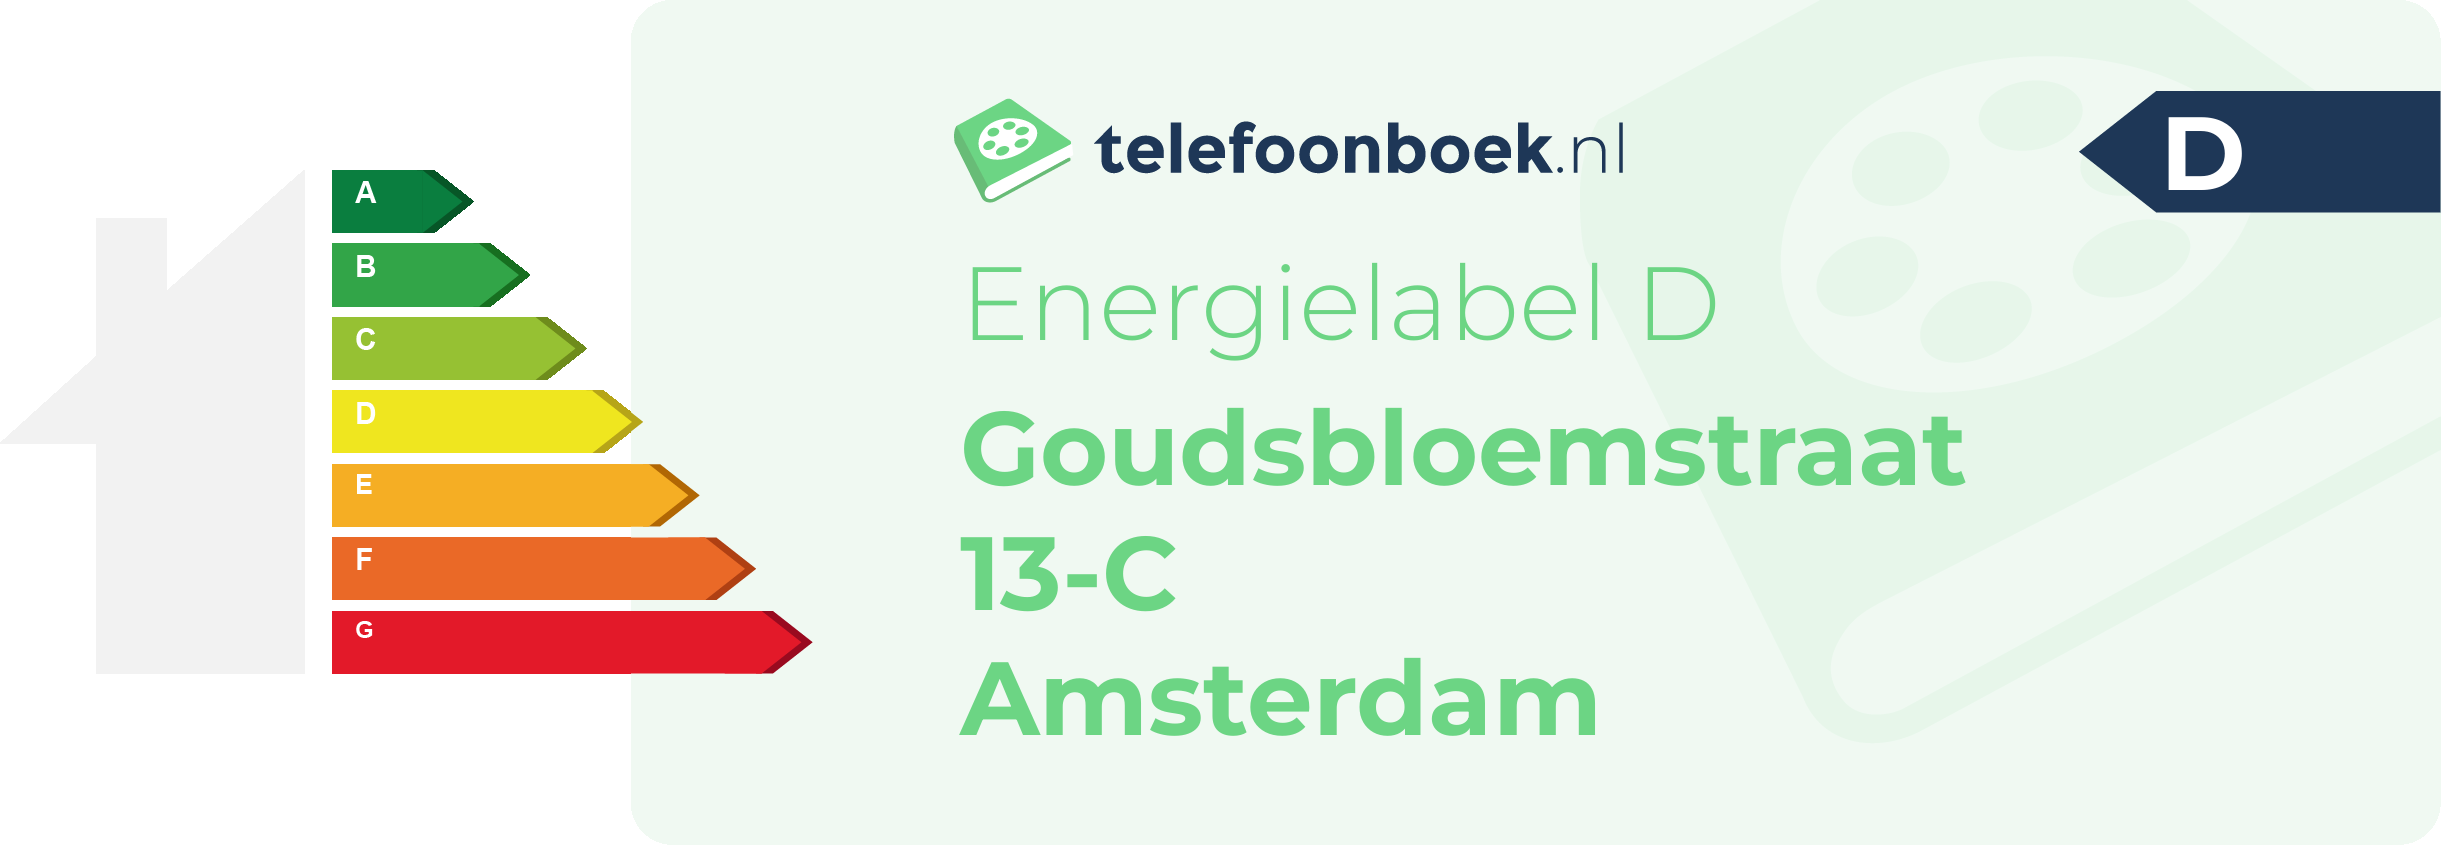 Energielabel Goudsbloemstraat 13-C Amsterdam